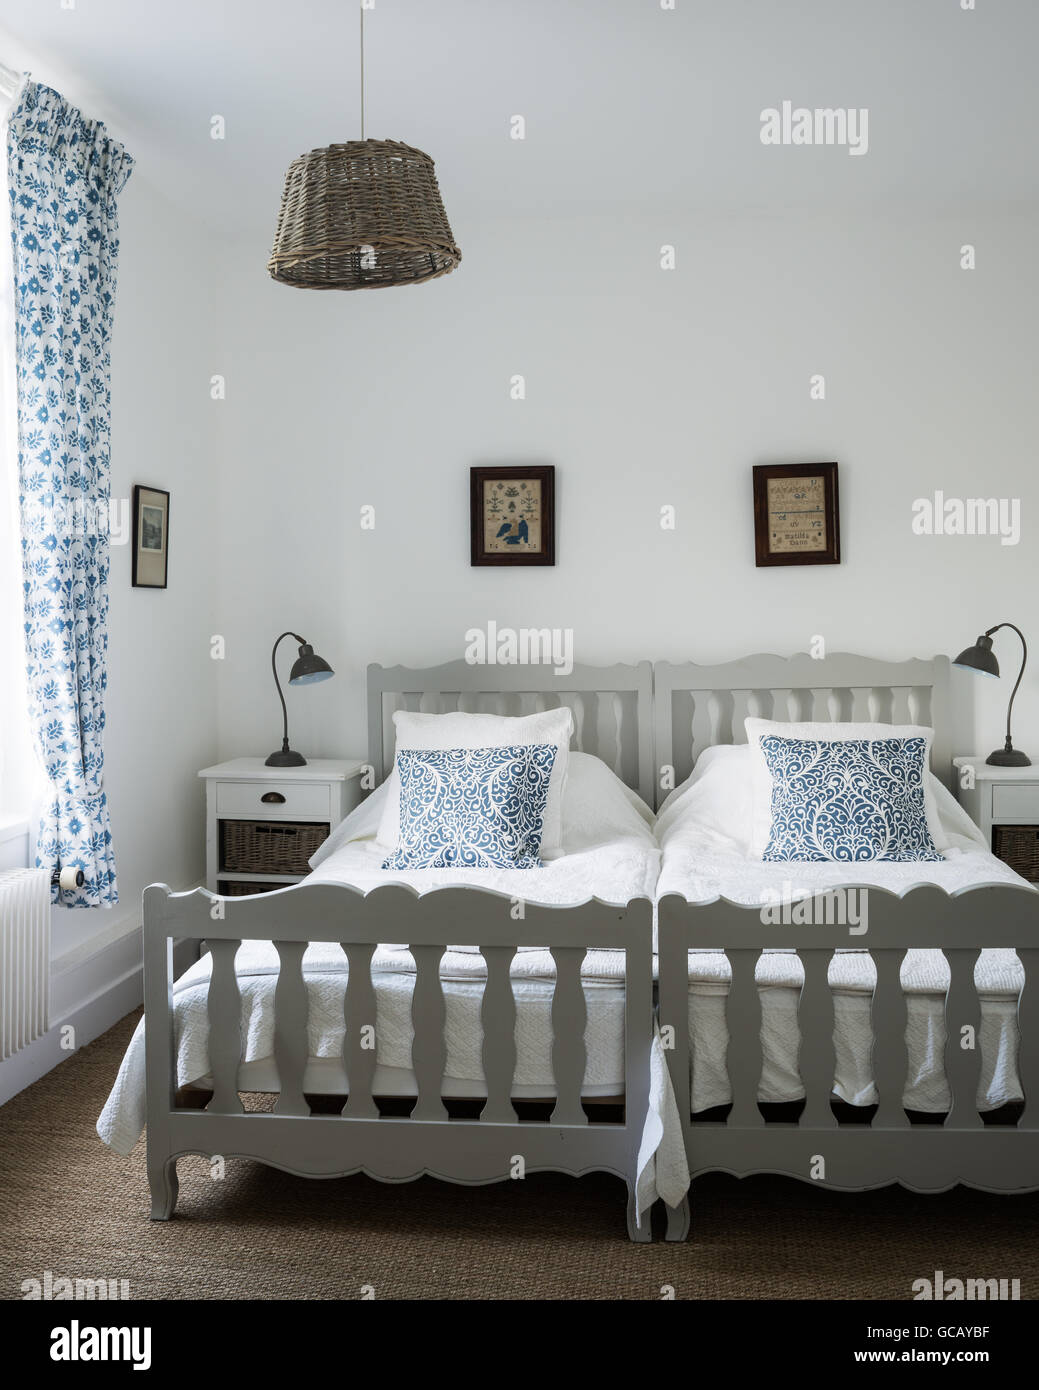 Zwei Einzelbetten im Zimmer mit schwedischen Block drucken, Vorhänge und Korb Lampenschirm Stockfoto